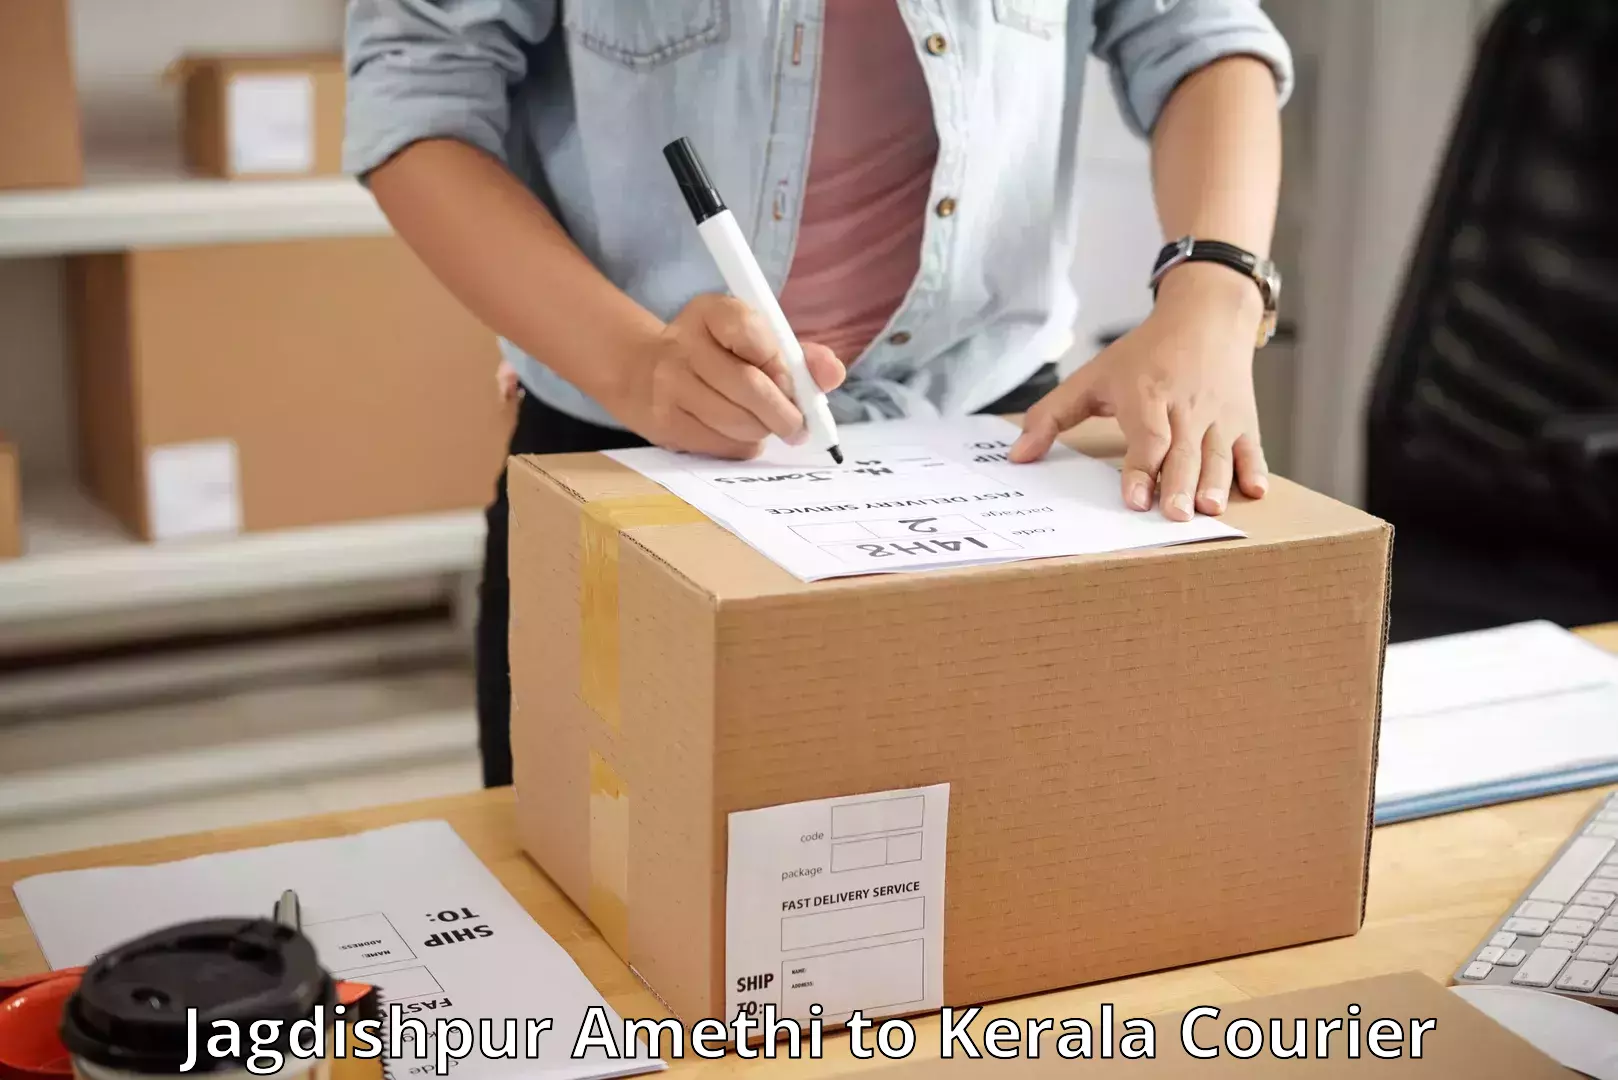 Professional courier services Jagdishpur Amethi to Mahatma Gandhi University Kottayam